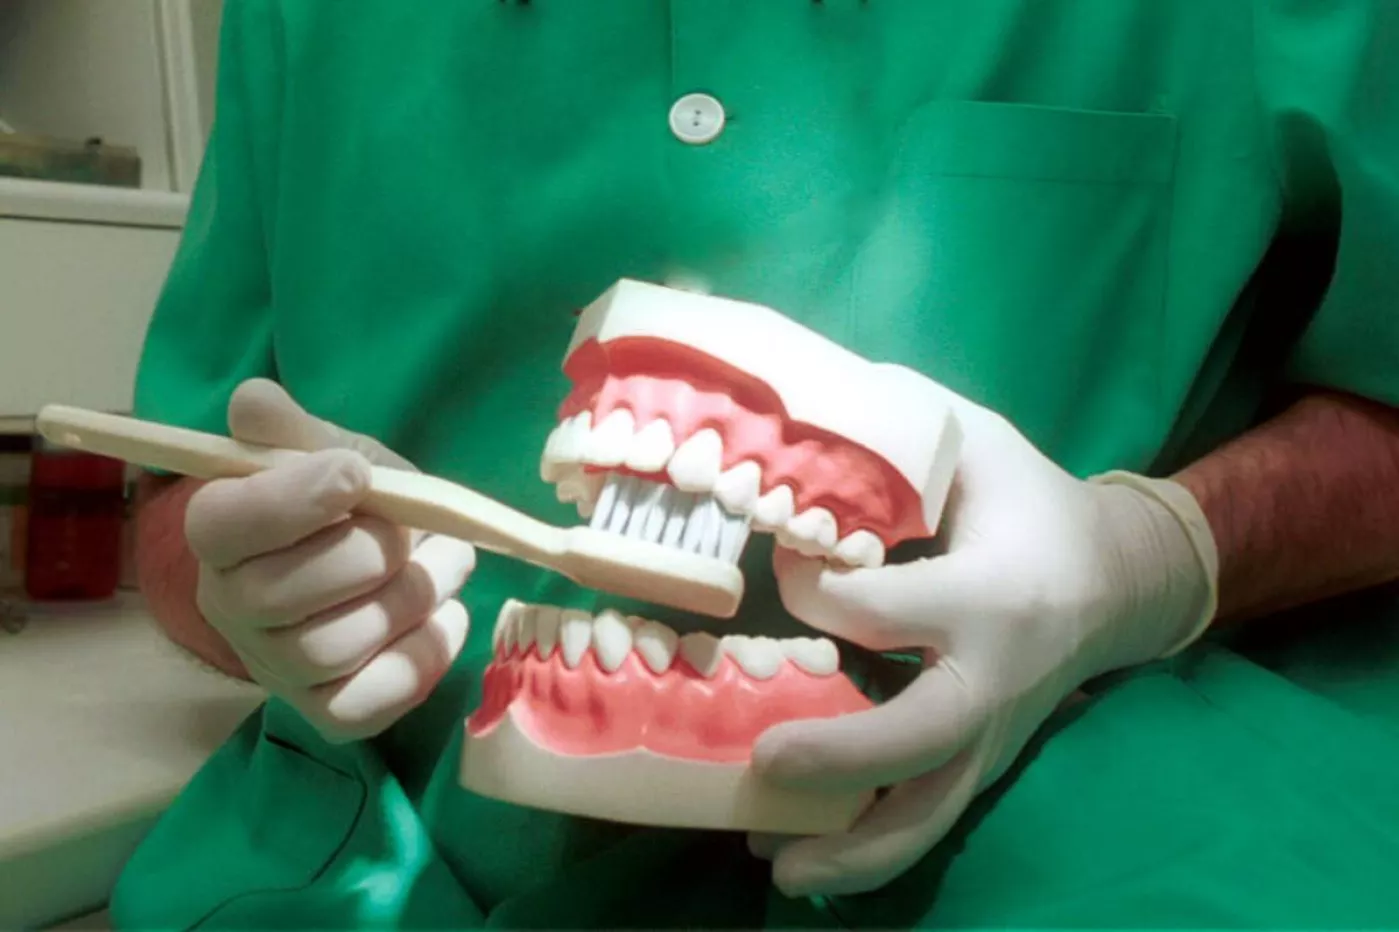 Se estima que la periodontitis afecta, aproximadamente, a la mitad de la población mundial. Además, está asociada a otras 60 enfermedades, incluyendo cardiopatías o diabetes.